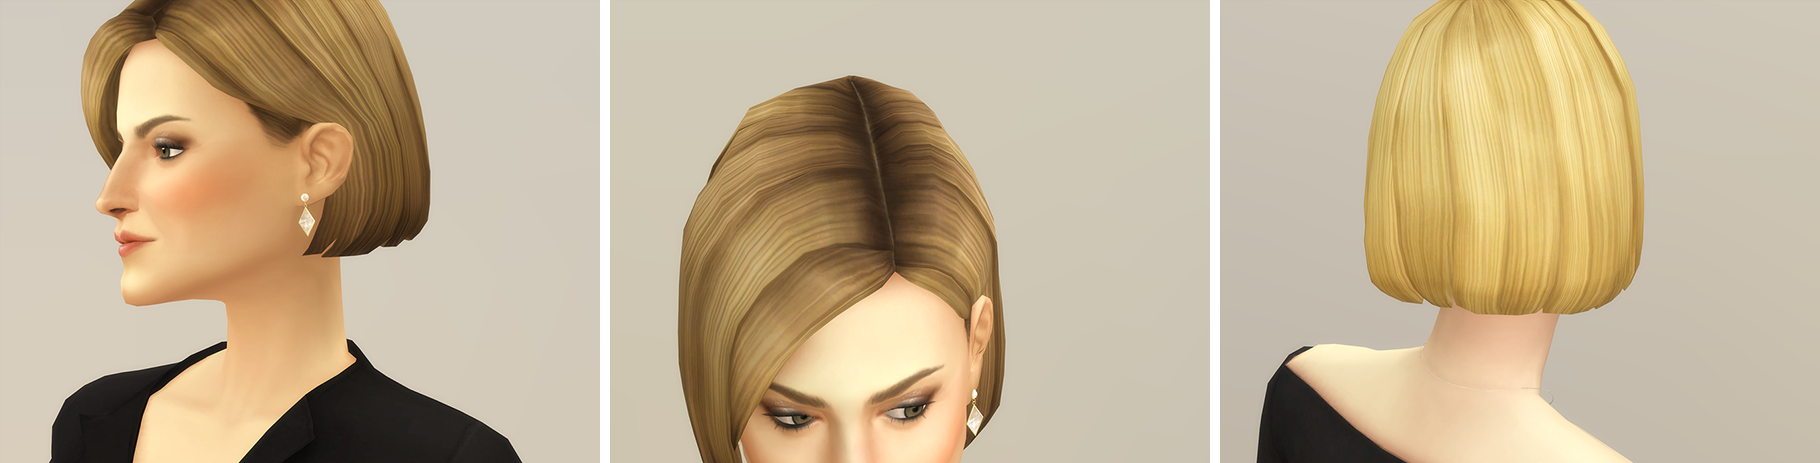 Short Bob Hair The Sims 4 Create A Sim Curseforge